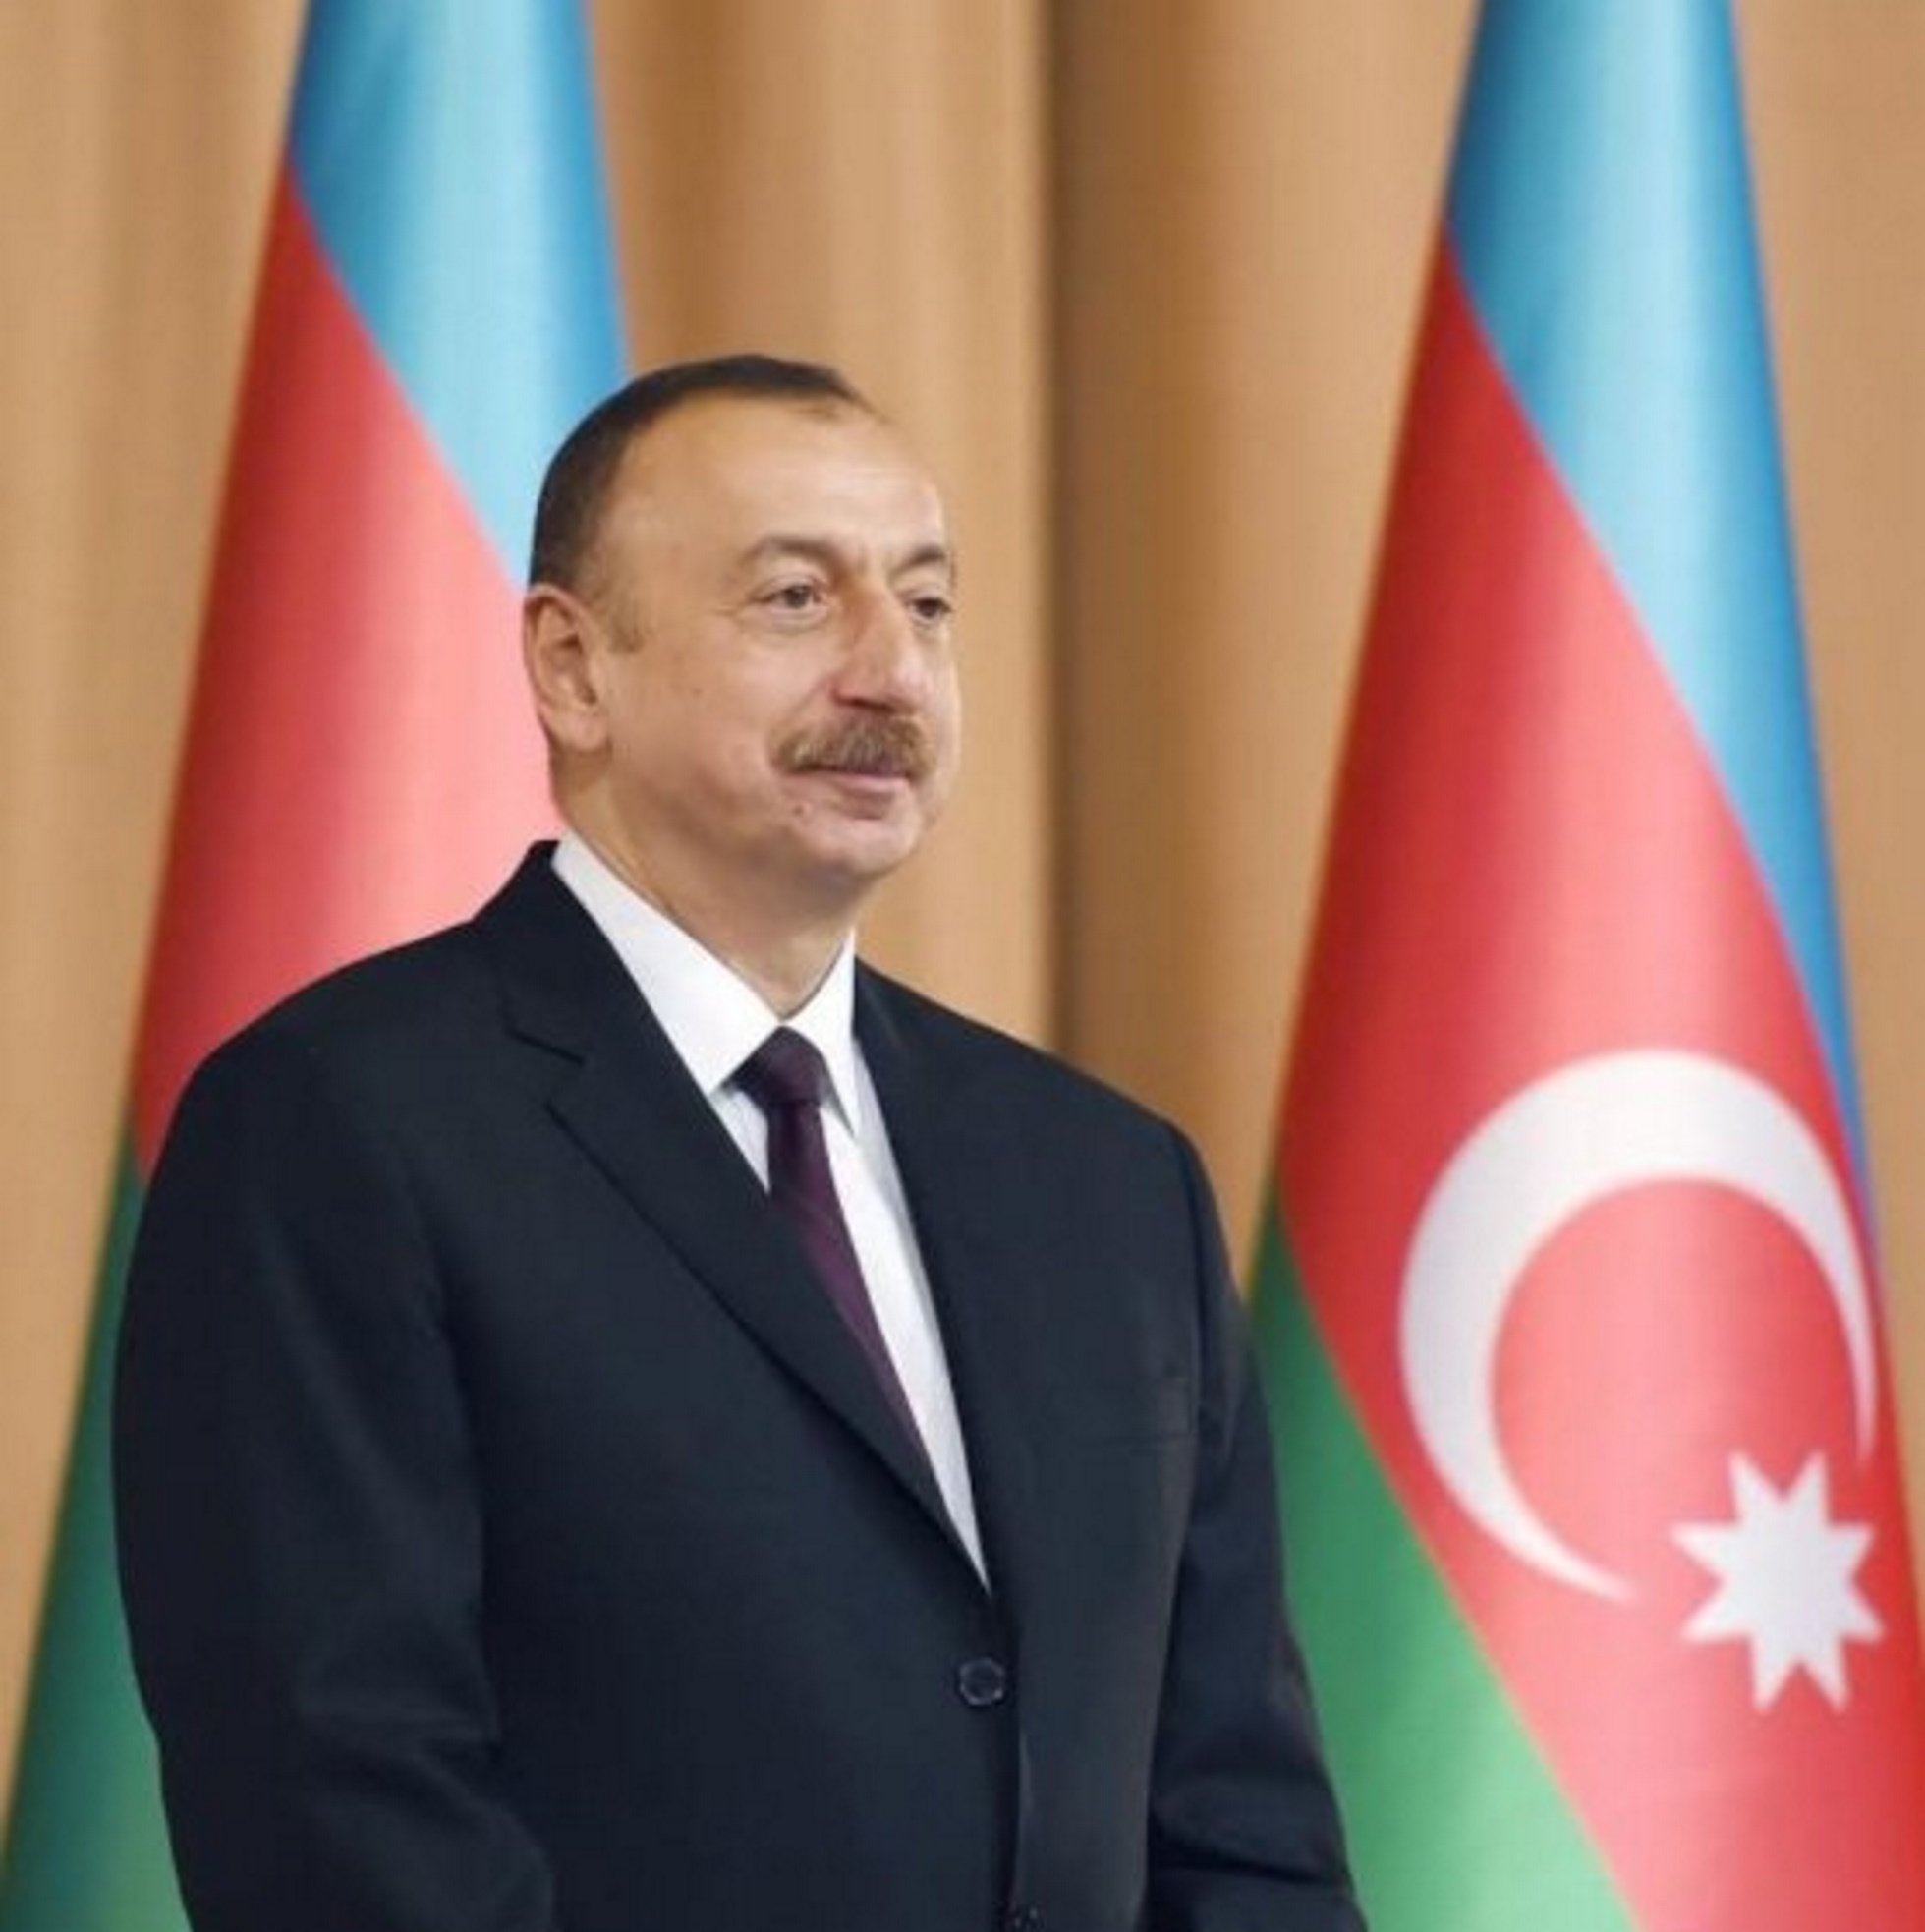 Vídeo: Presidente de Azerbaiyán: "¿Catalunya tiene derecho a autodeterminación?"